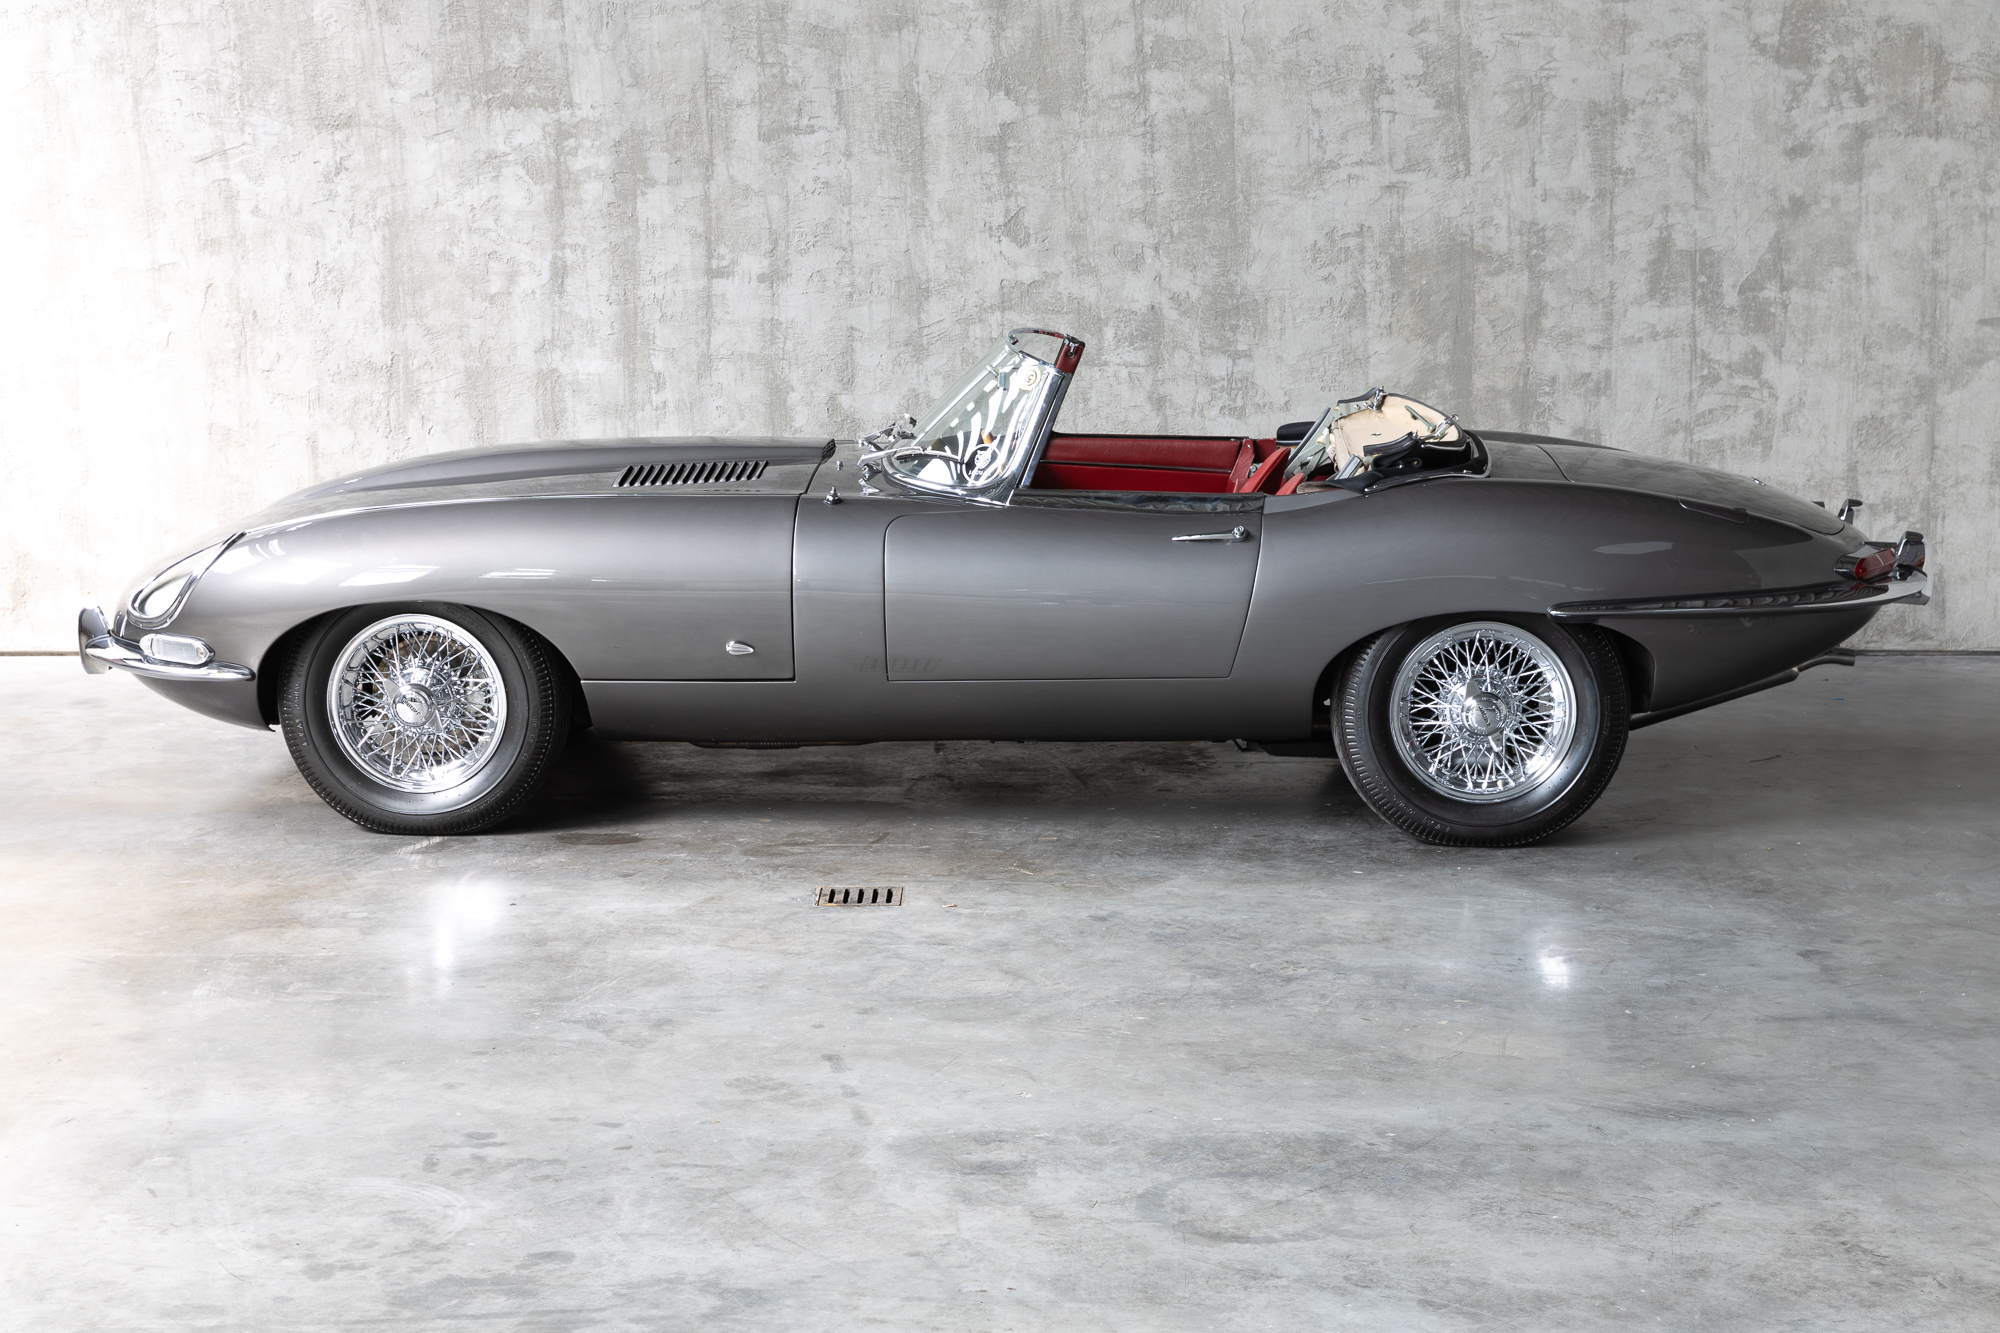 1961-Jaguar-EType-OBL-for-sale-DriveCity-Sales-72dpi-12